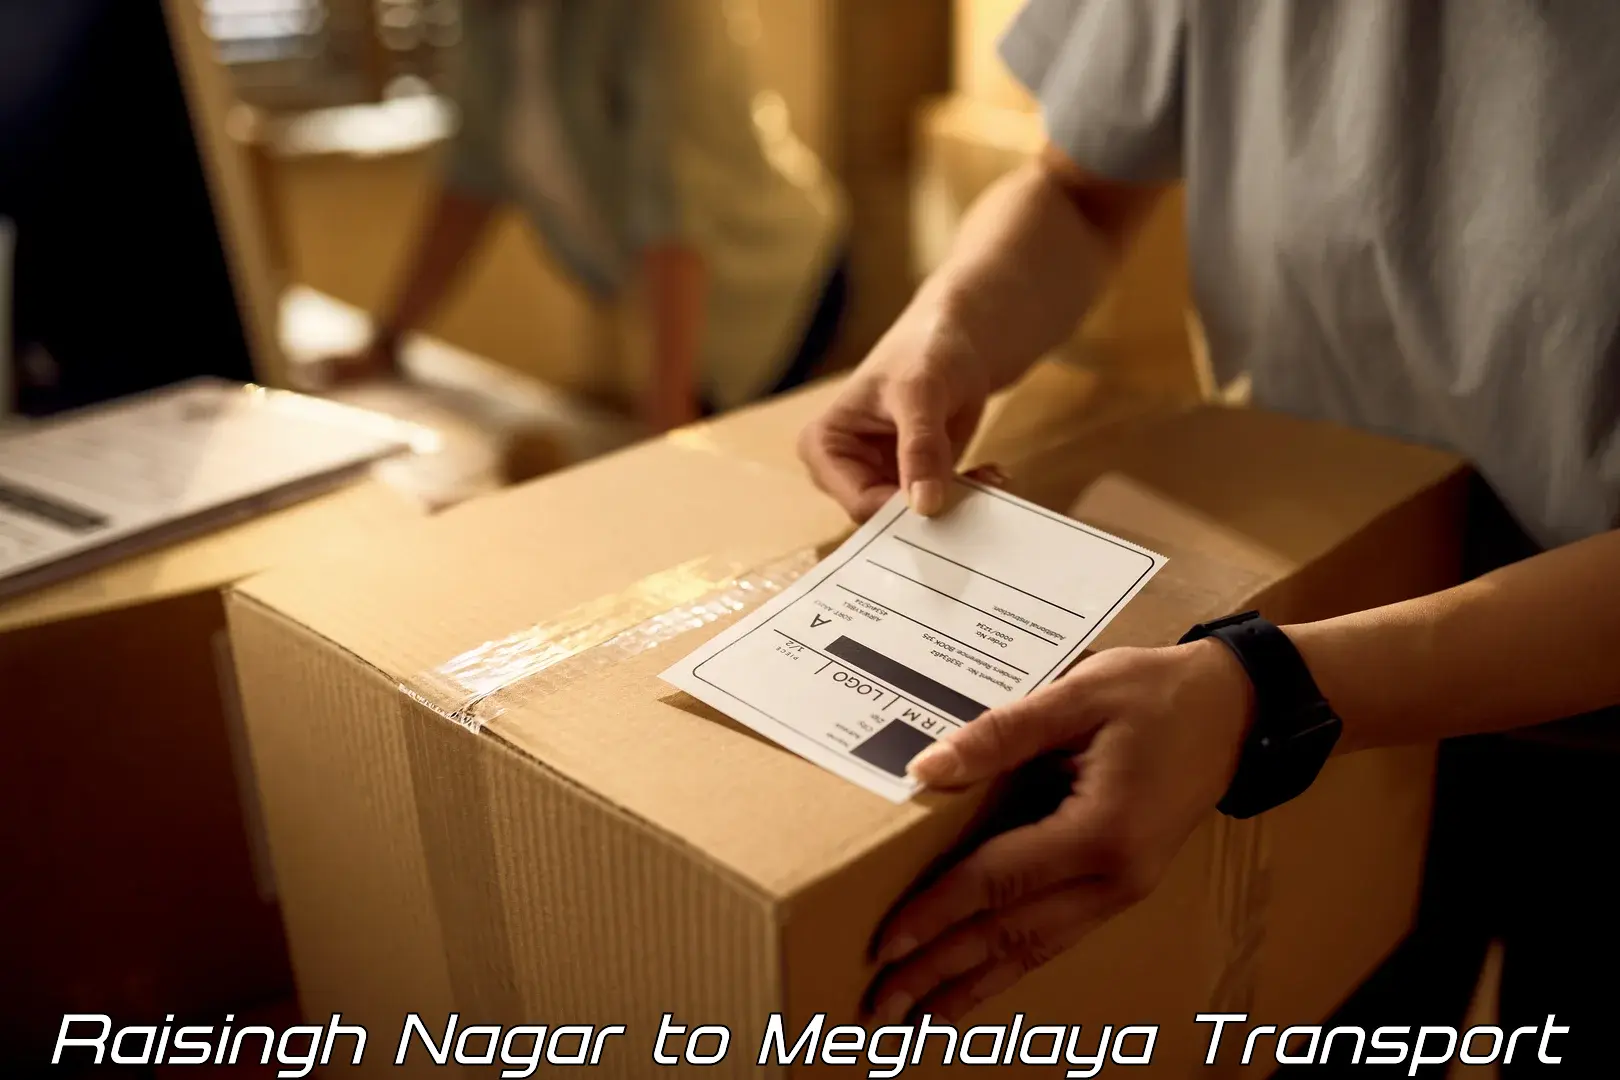 Transport services Raisingh Nagar to Shillong